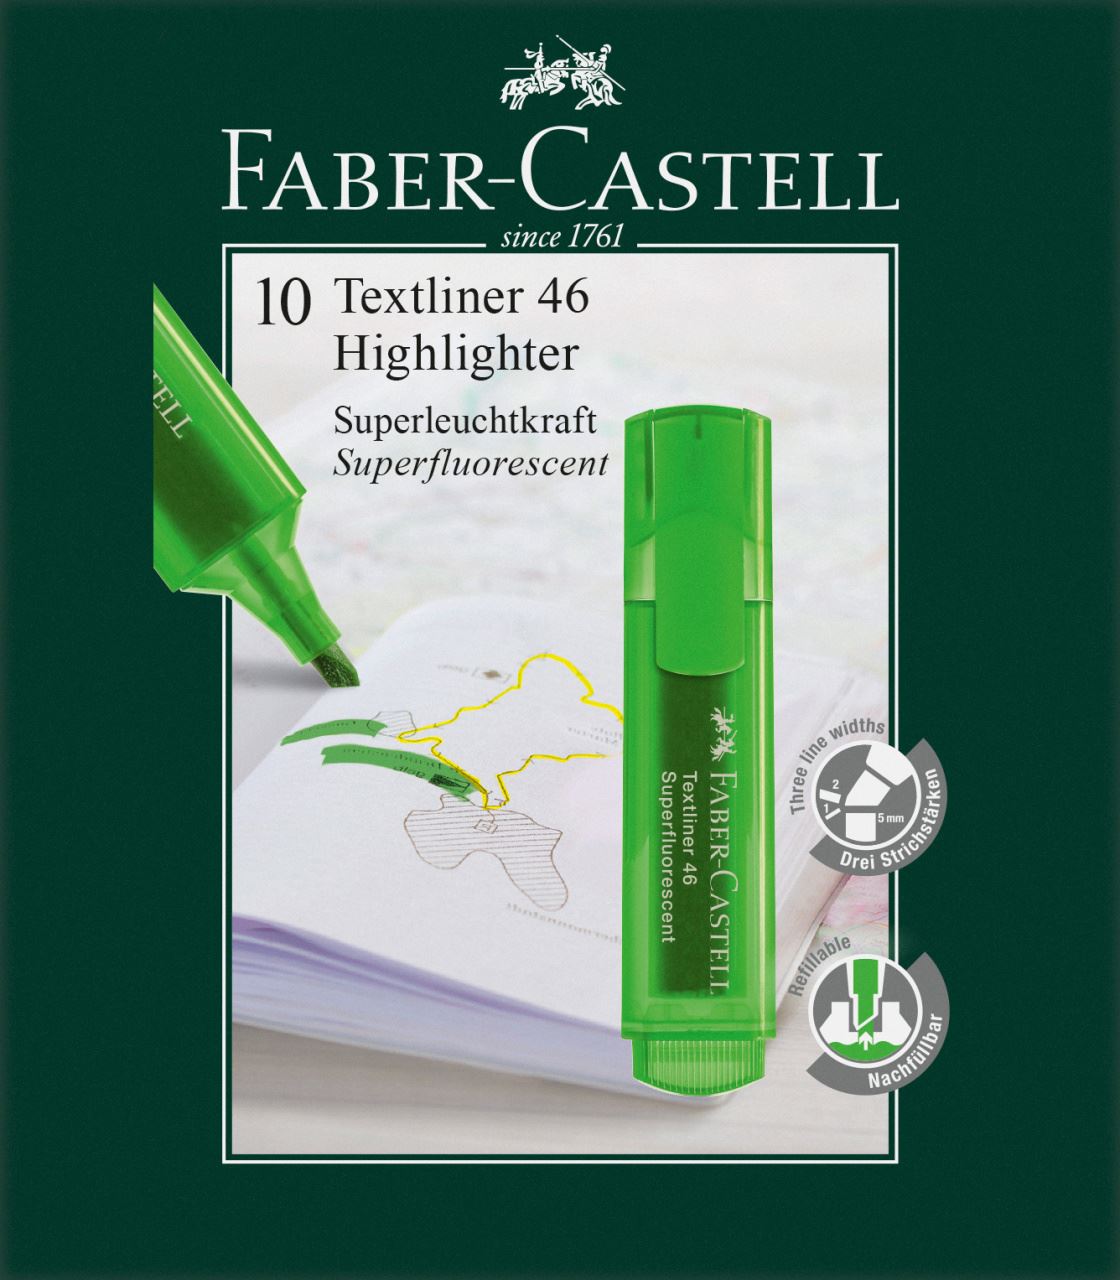 Faber-Castell - Zvýrazňovač Textliner 46, zelená